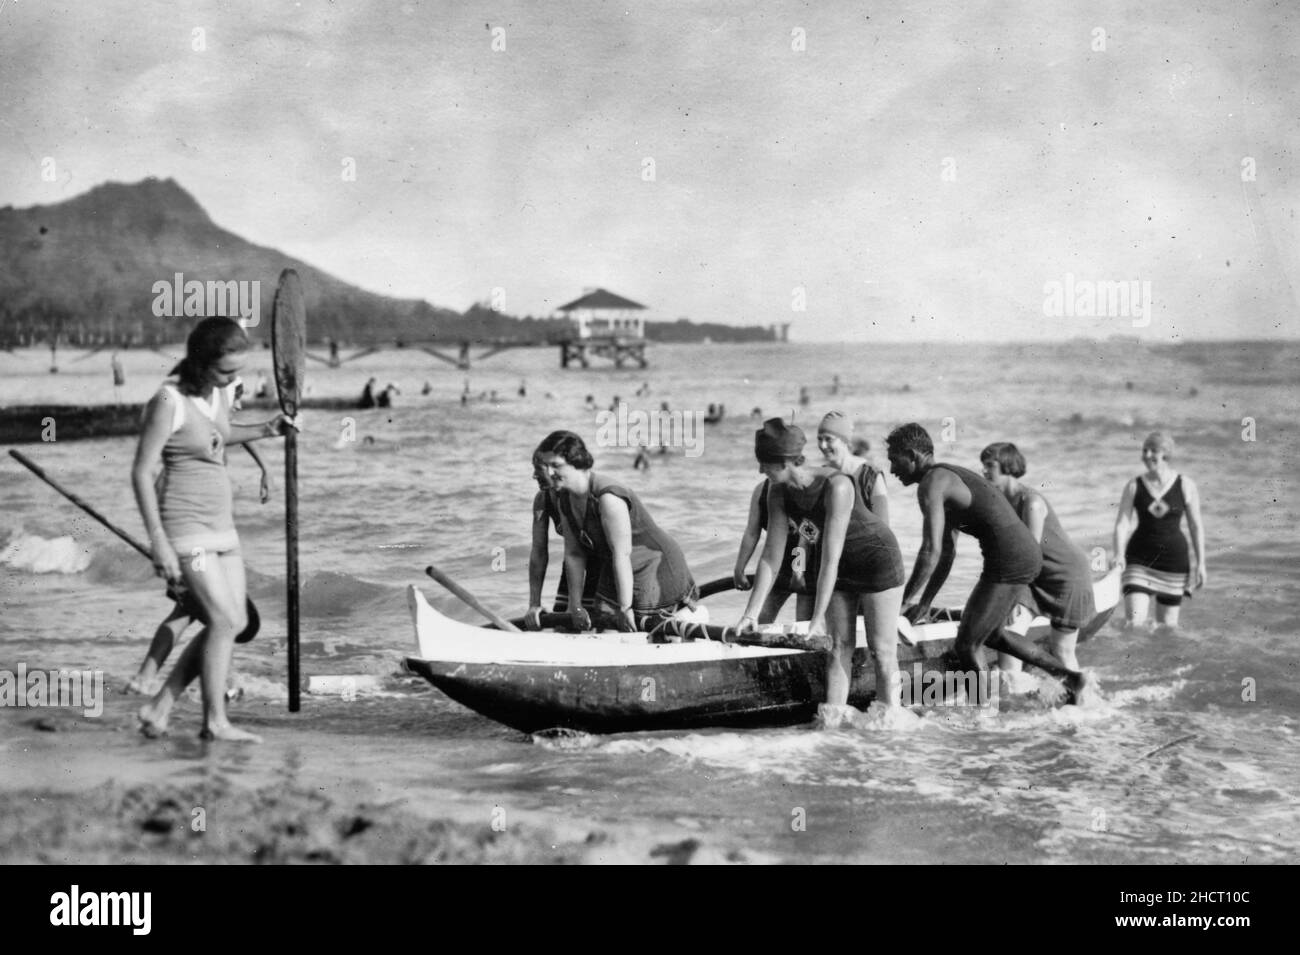 Frauen-Lebensretter schleppen in Waikiki ein Auslegerkanu hoch. Nach dem Training in der Brandung ziehen diese Mitglieder des lebensrettenden Frauenkorps ihr Boot unter der Leitung von David Kehanemoku, dem berühmten Kanumann, 1920, hoch Stockfoto